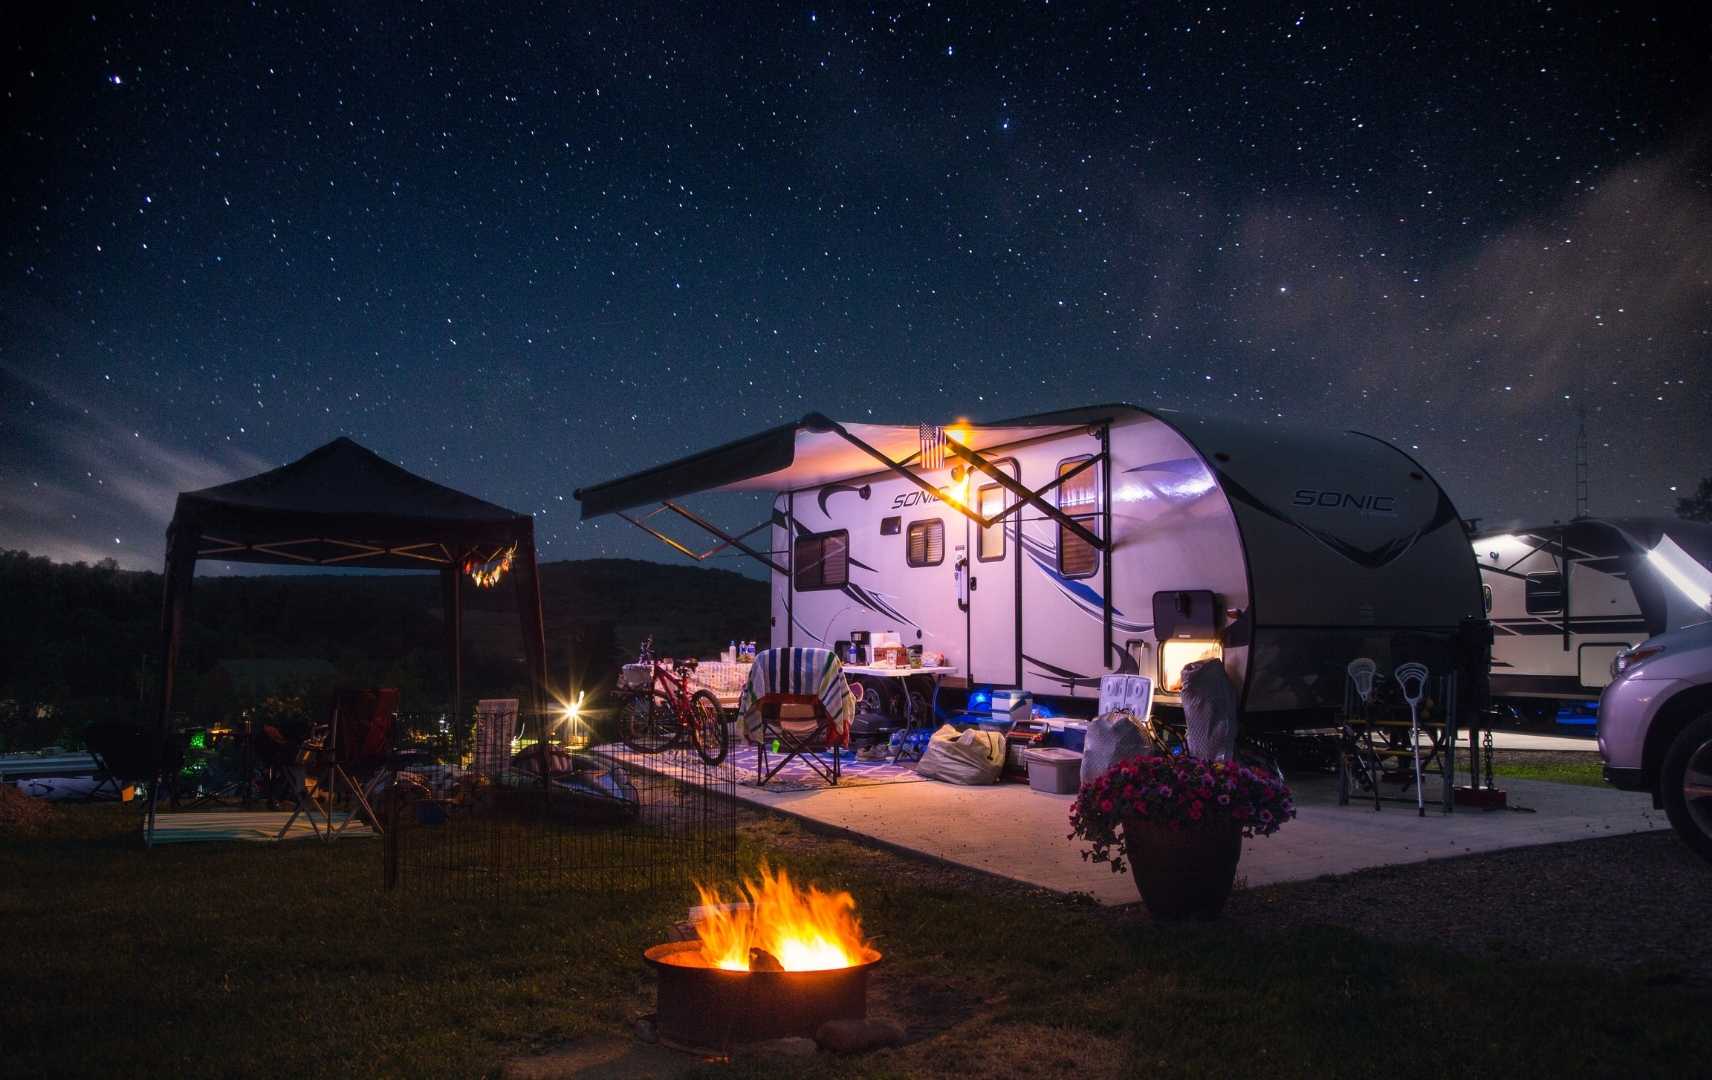 Wohnwagen am Campingplatz bei Nacht